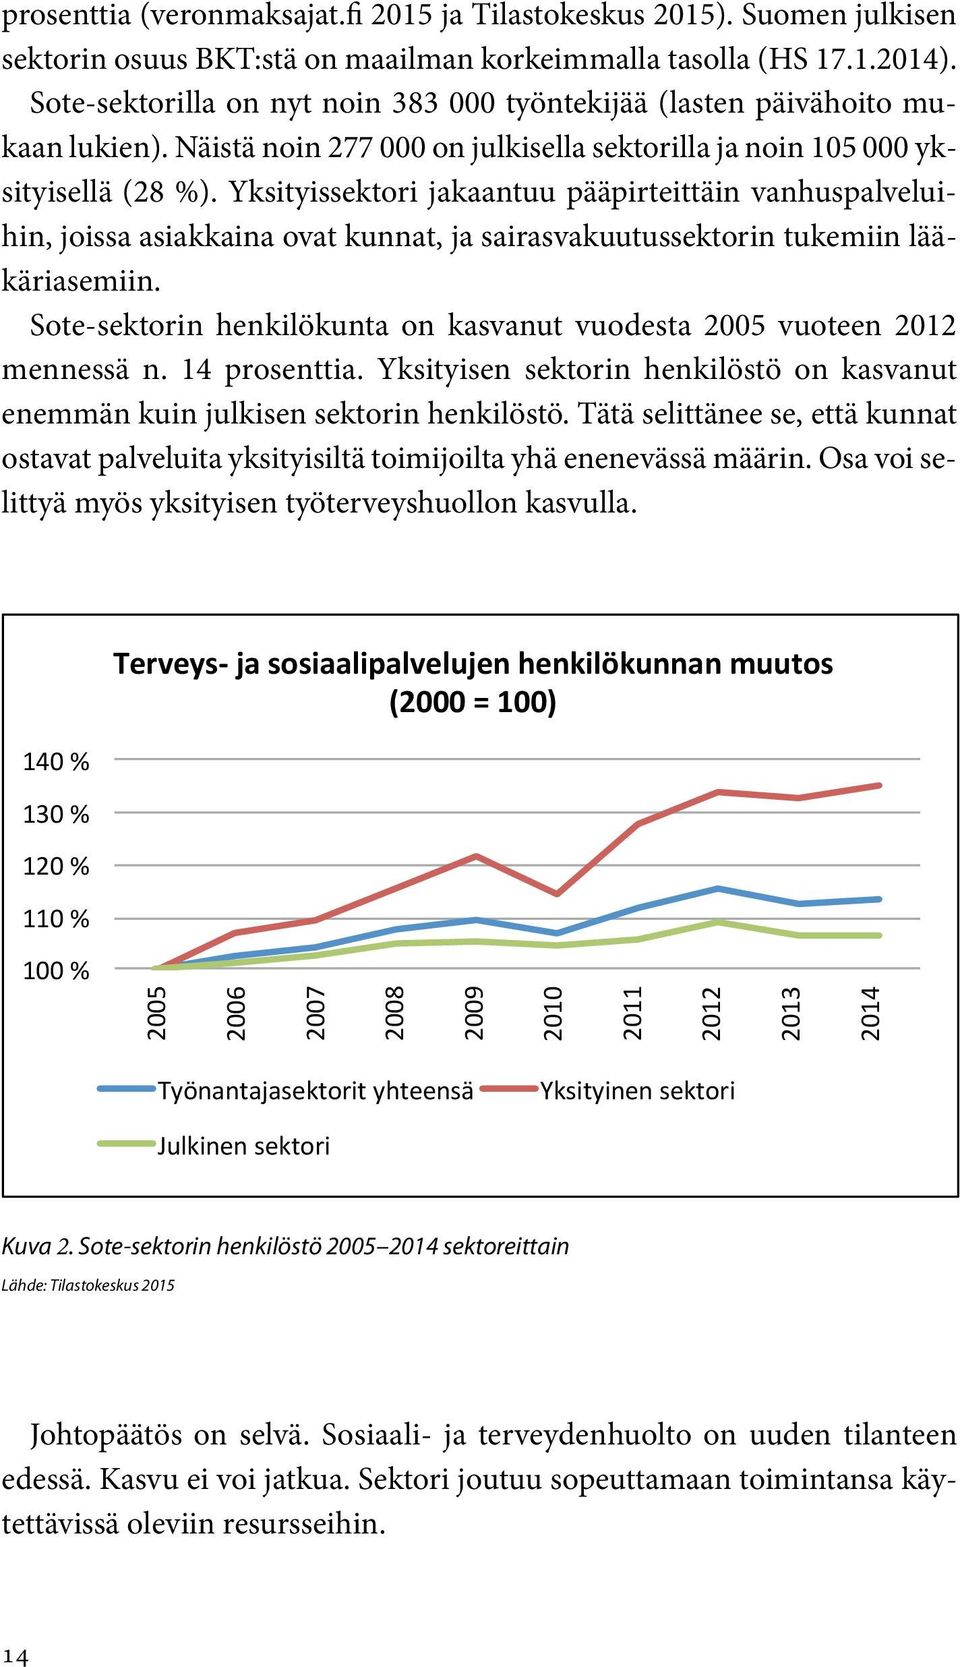 Suomen julkisen sektorin 200 % osuus BKT:stä on maailman korkeimmalla tasolla (HS 17.1.2014). Sote-sektorilla on nyt noin 383 000 työntekijää (lasten päivähoito mukaan lukien).